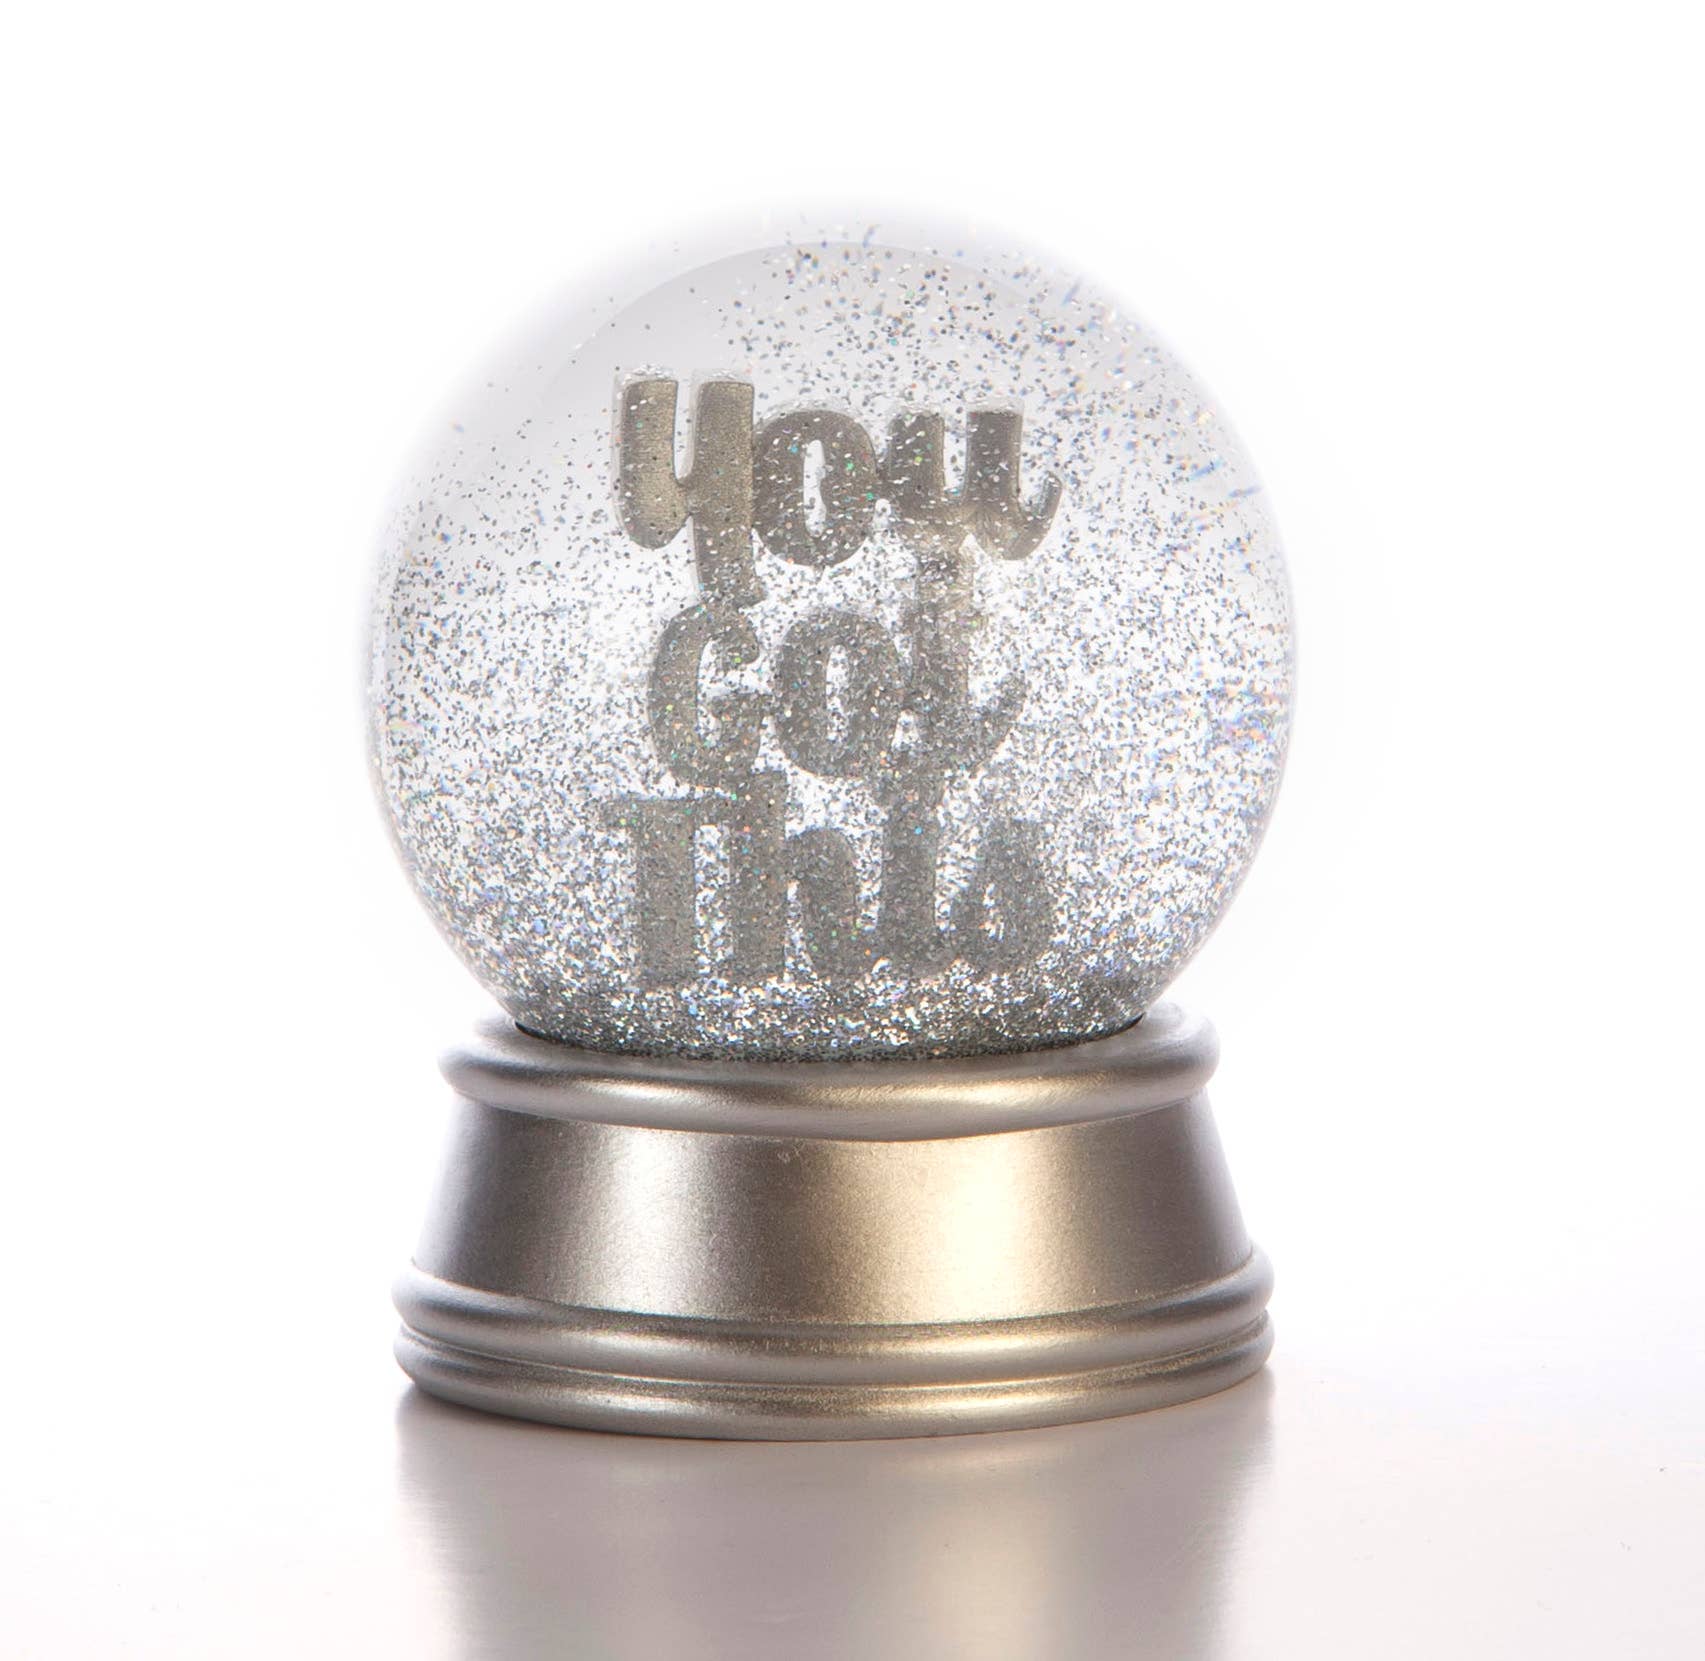 'You Got This' Glitter Ball